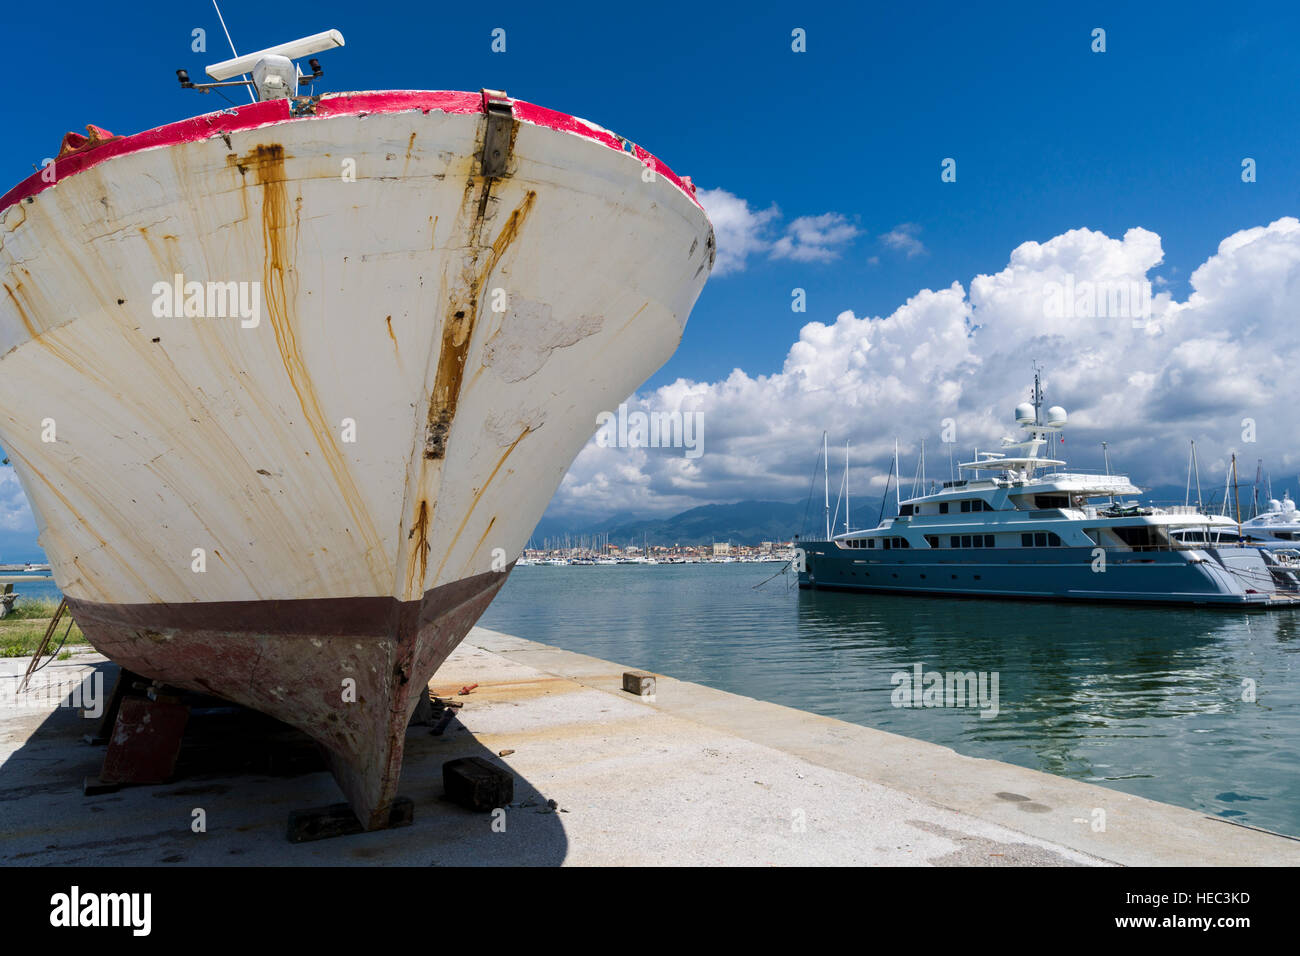 Segel- und Motorboote im Hafen verankert sind, ein altes Boot ist aus dem Wasser genommen Stockfoto